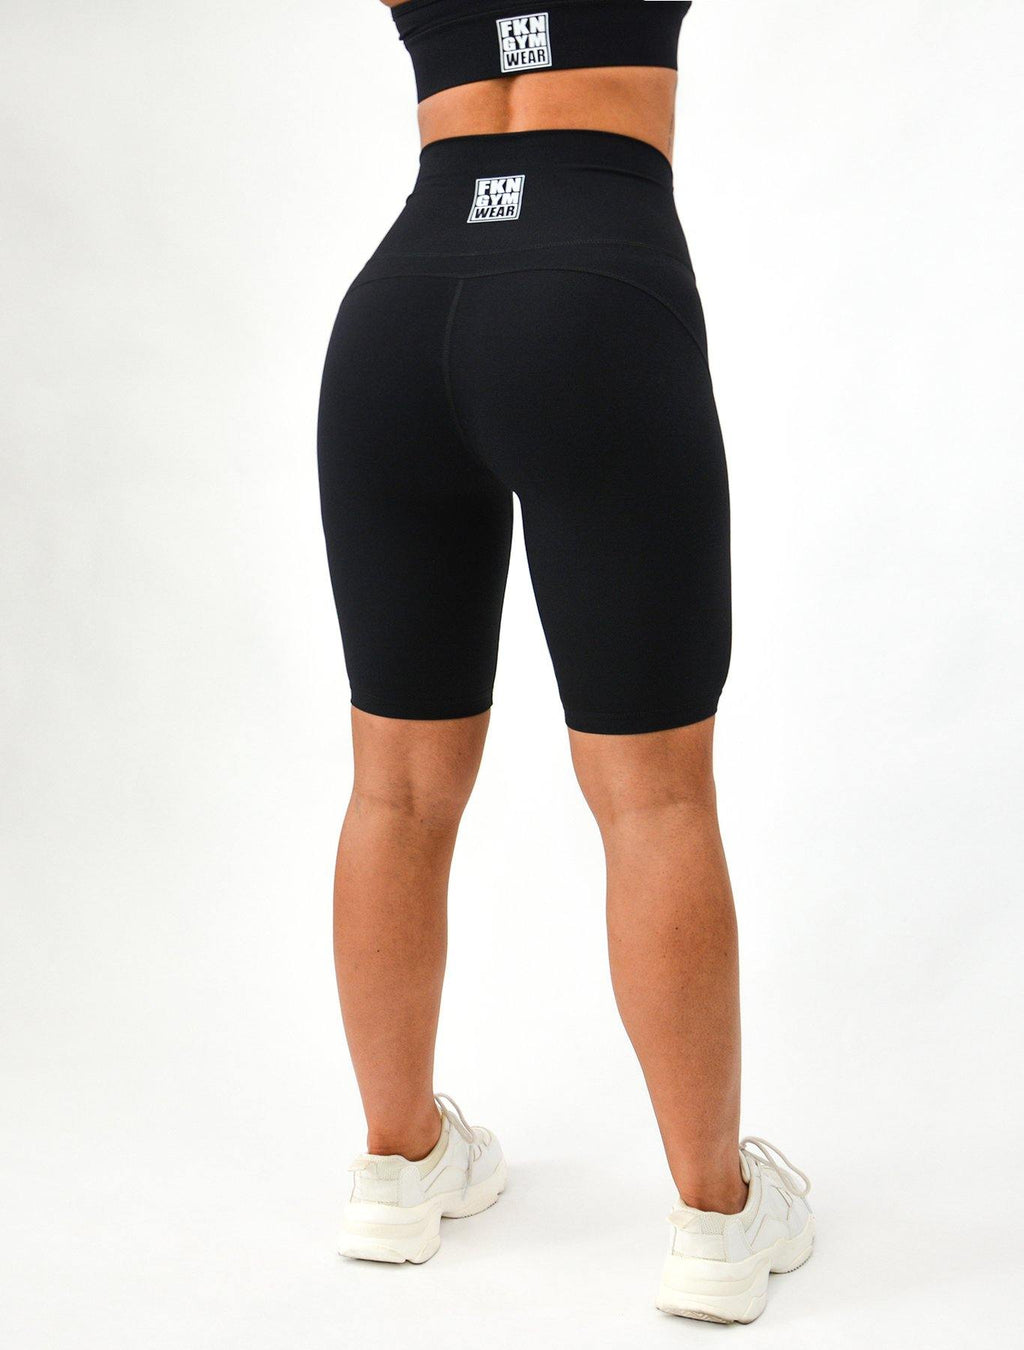 Vixen | Bike Shorts - FKN Gym Wear